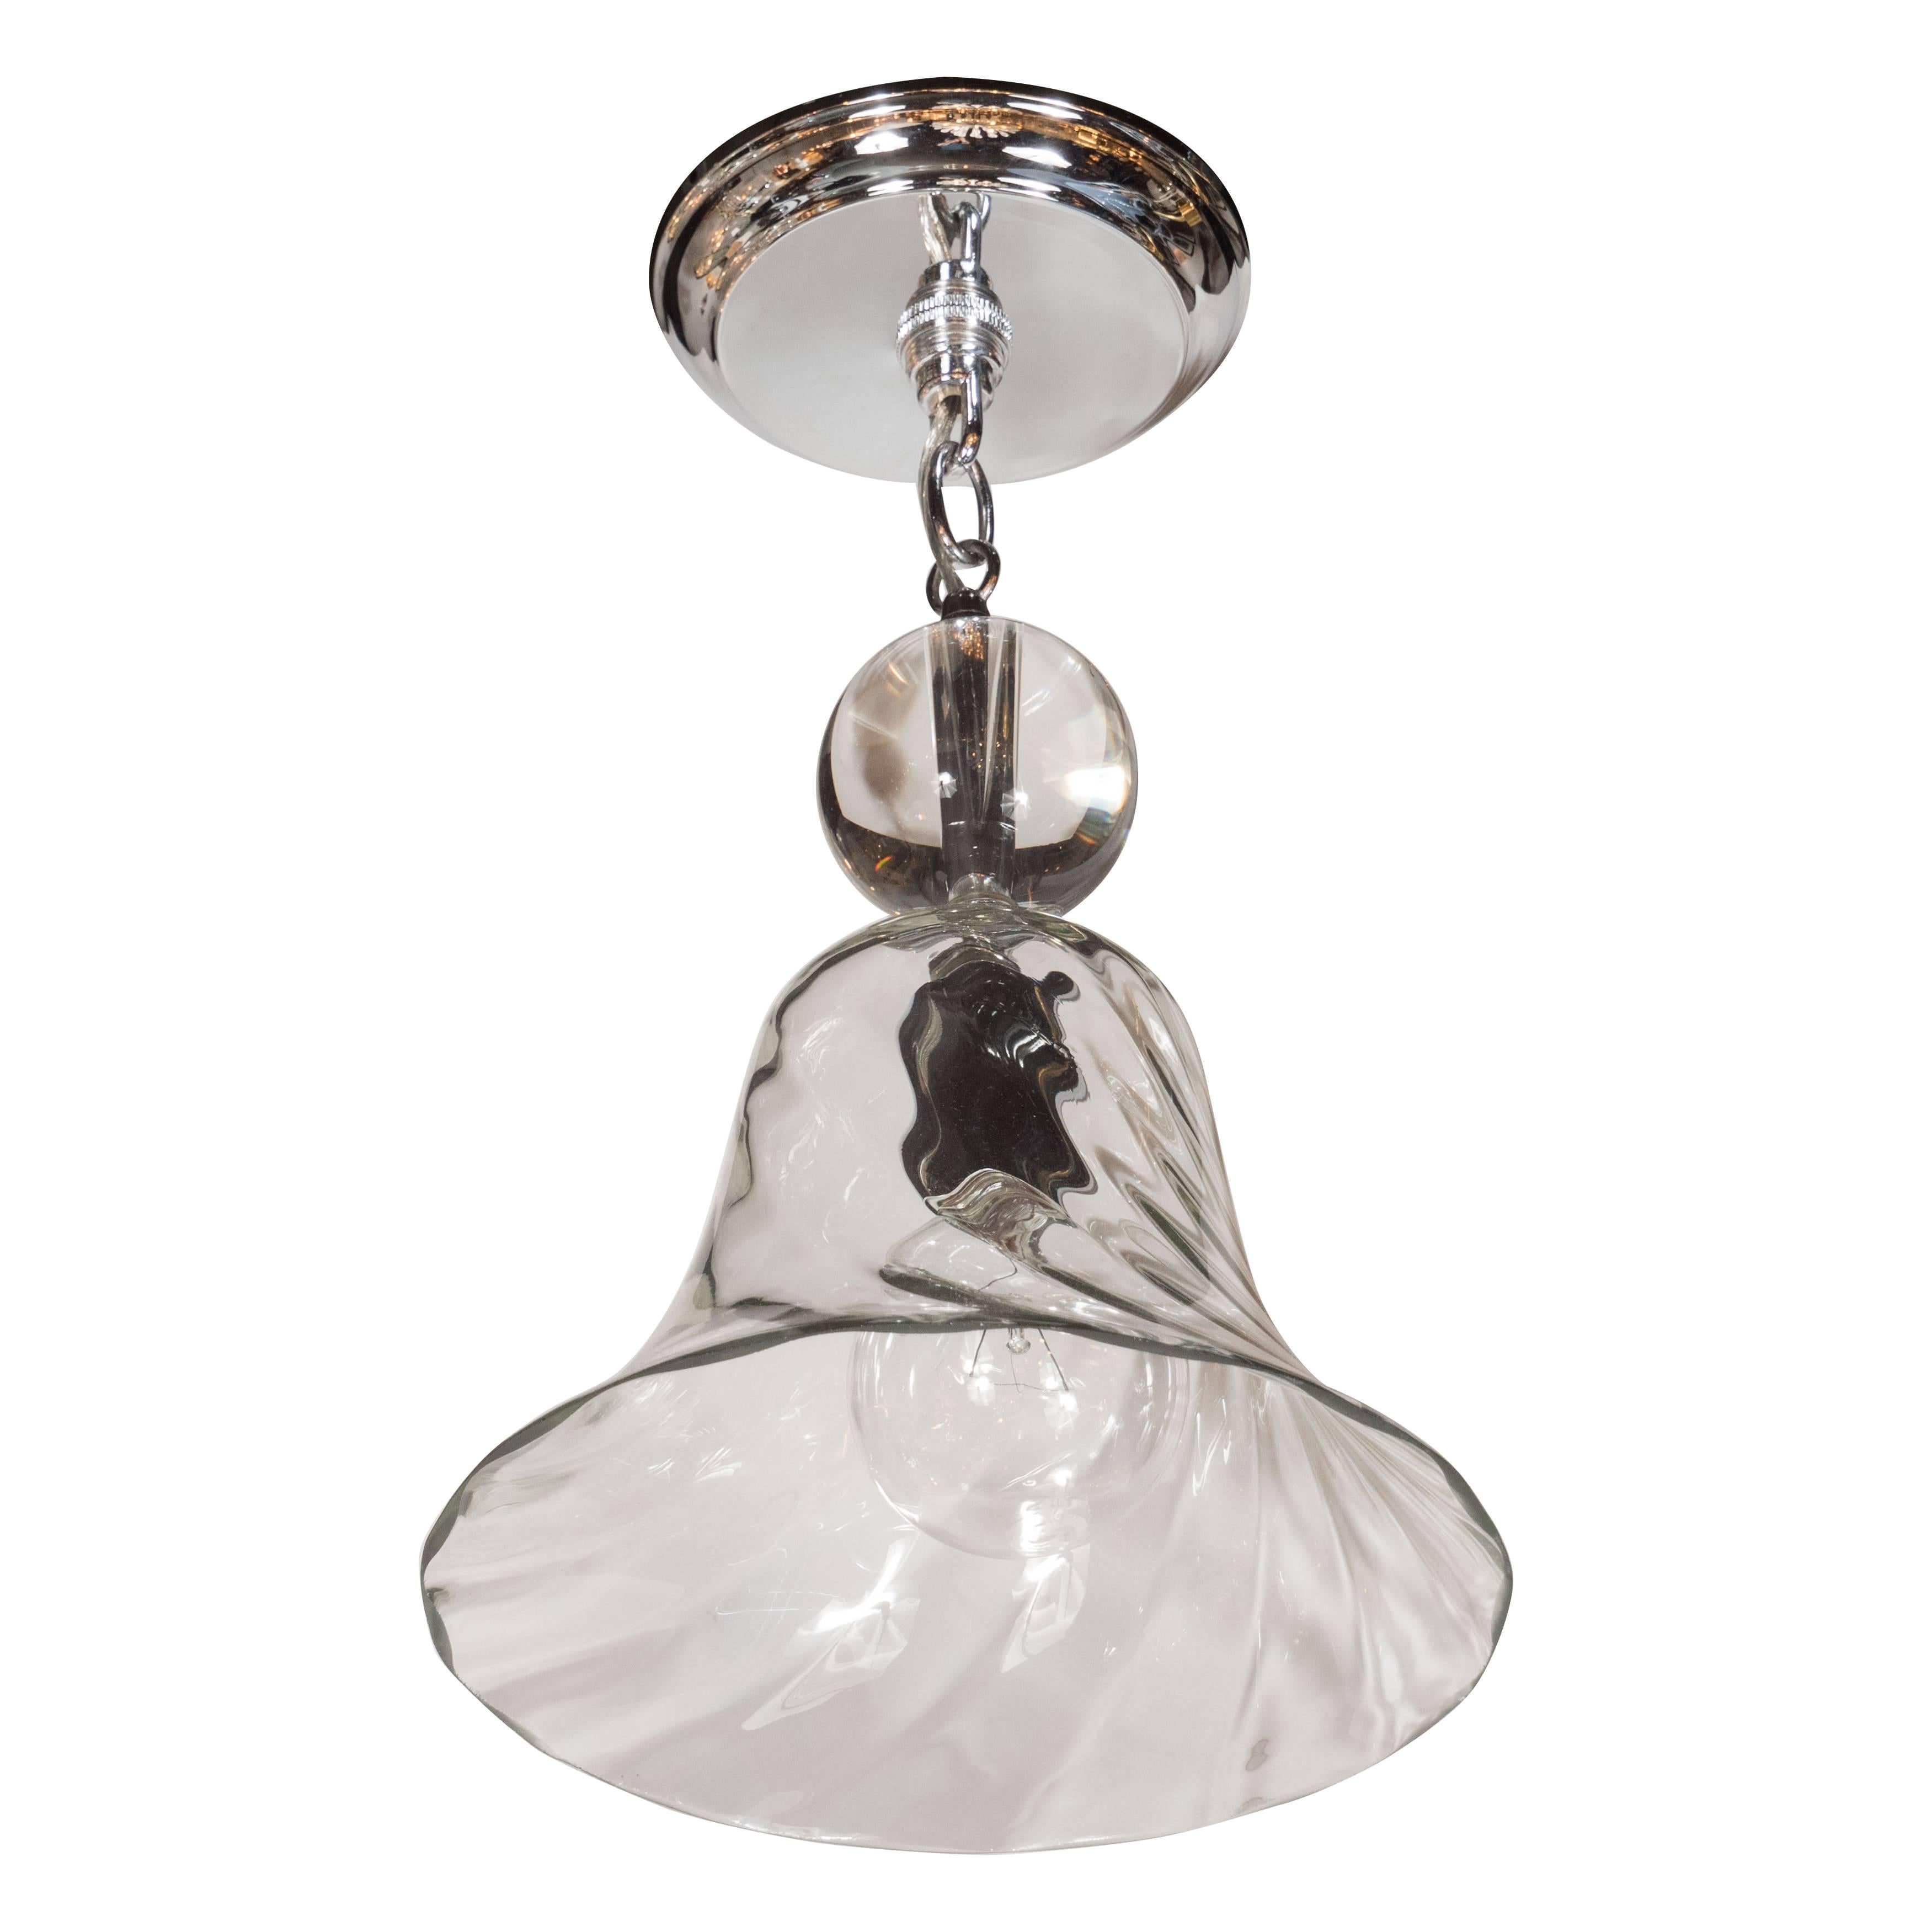 Handblown Smoke Tinted Murano Glass Pendant with Crystal Ball Embellishment